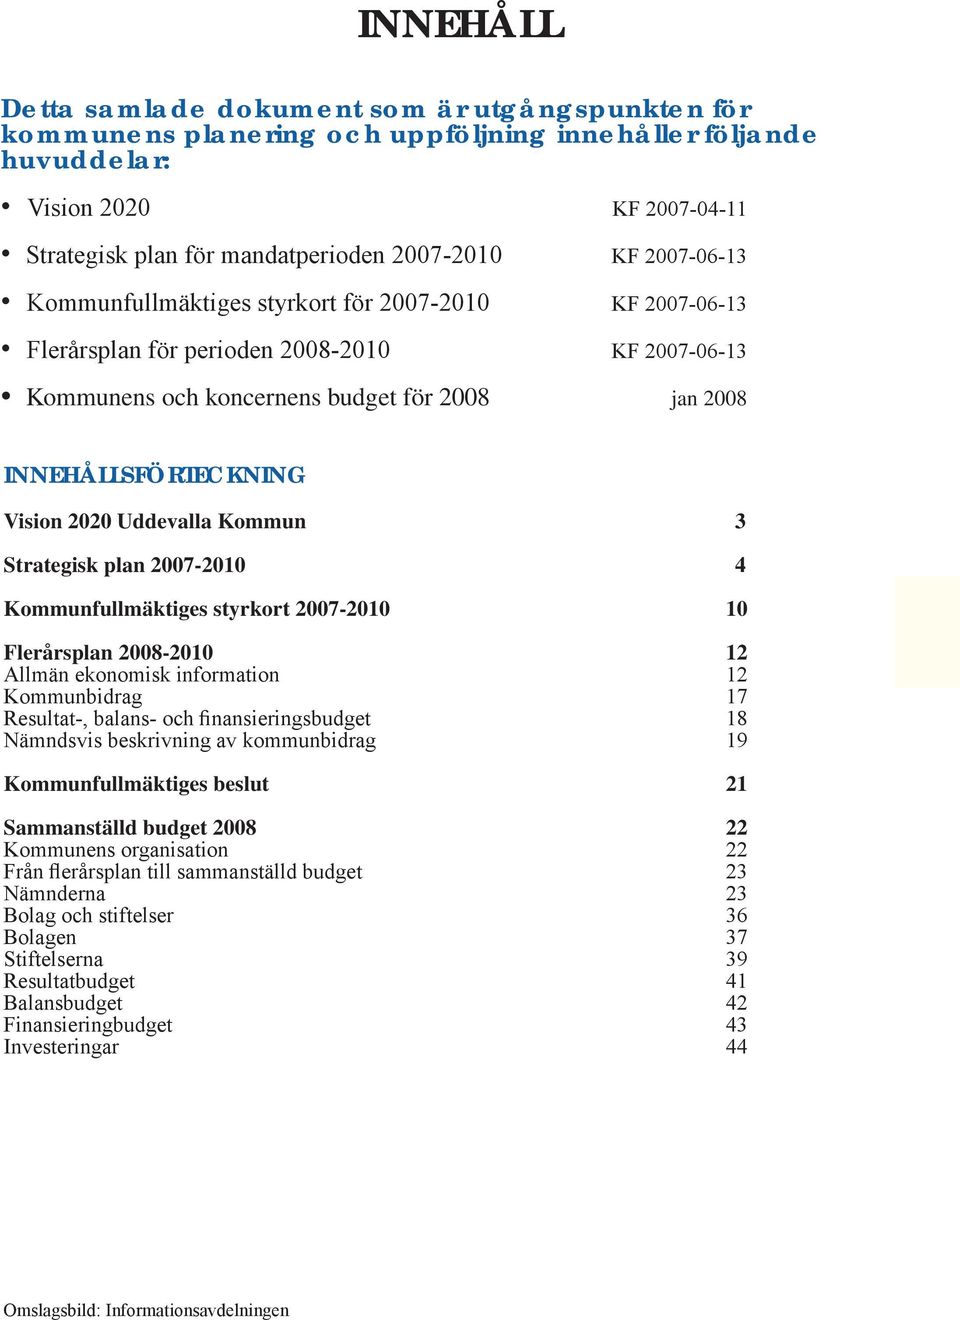 Uddevalla Kommun 3 Strategisk plan 2007-2010 4 Kommunfullmäktiges styrkort 2007-2010 10 Flerårsplan 2008-2010 12 Allmän ekonomisk information 12 Kommunbidrag 17 Resultat-, balans- och